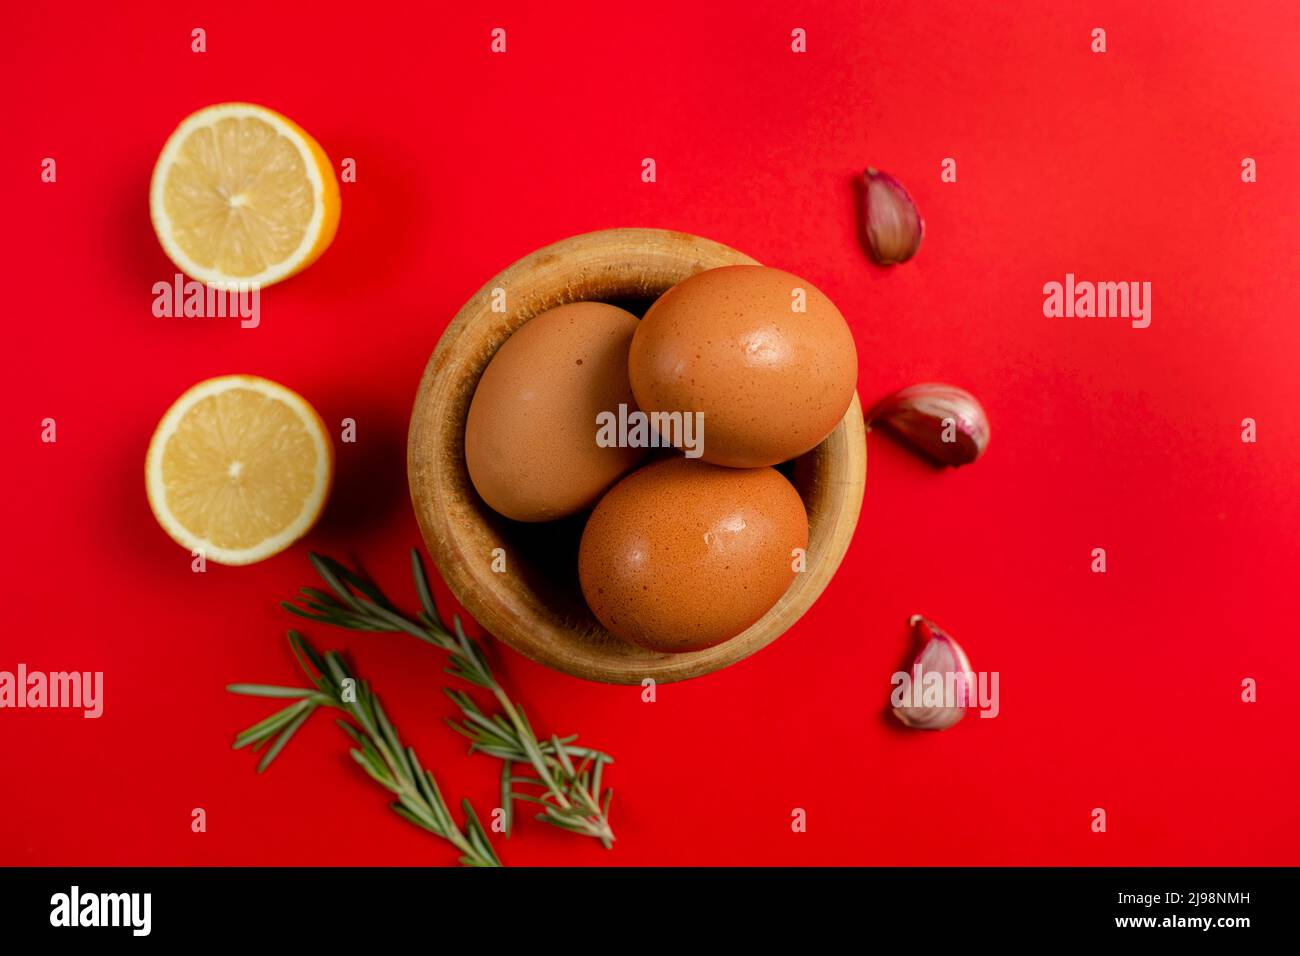 Vista dall'alto di uova, limoni e aglio ingredienti necessari per preparare la ricca salsa di alioli fatta in casa tipica salsa spagnola Foto Stock